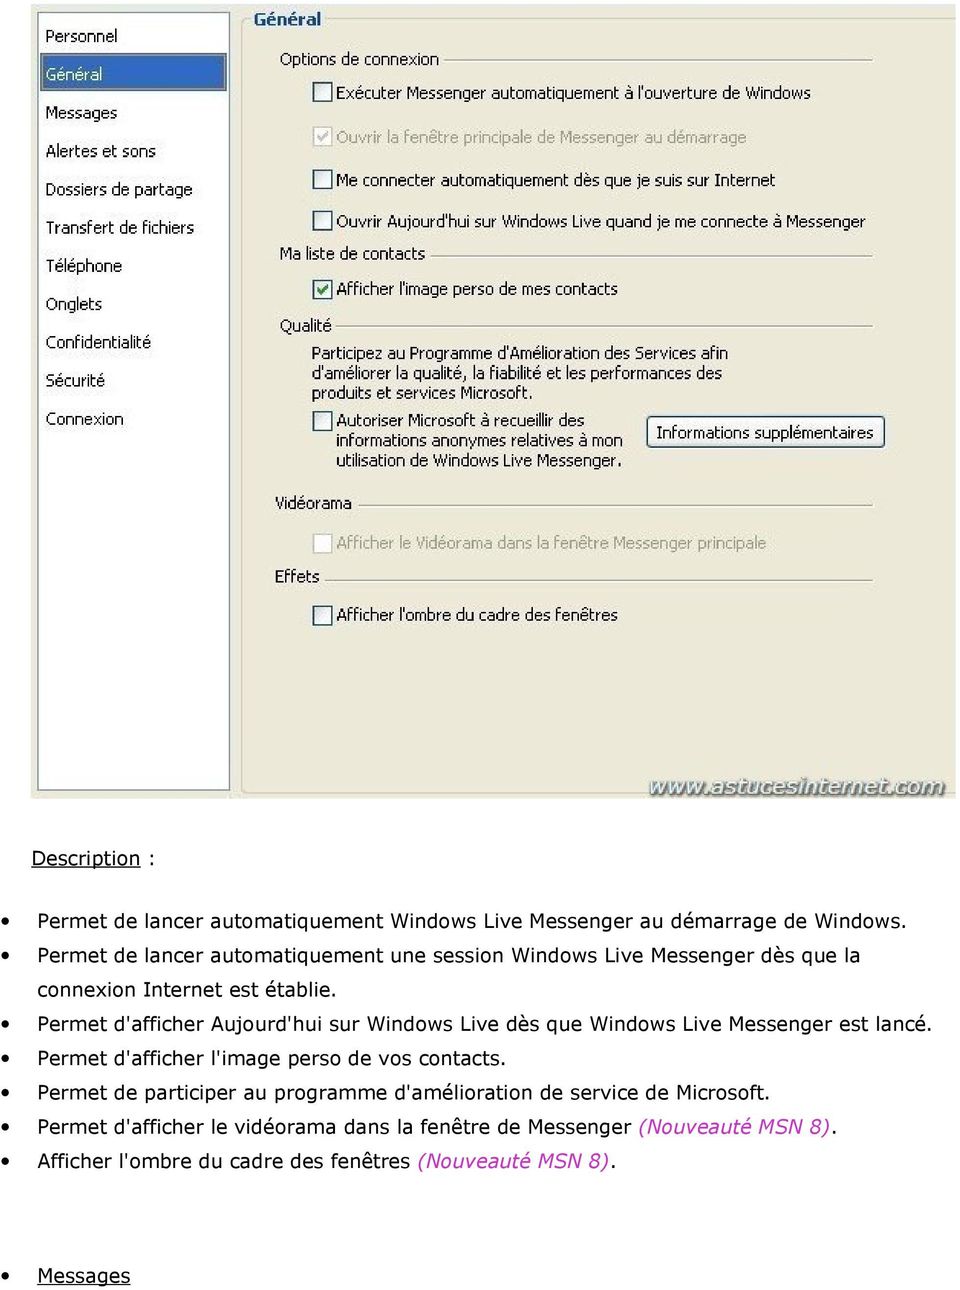 Permet d'afficher Aujourd'hui sur Windows Live dès que Windows Live Messenger est lancé. Permet d'afficher l'image perso de vos contacts.